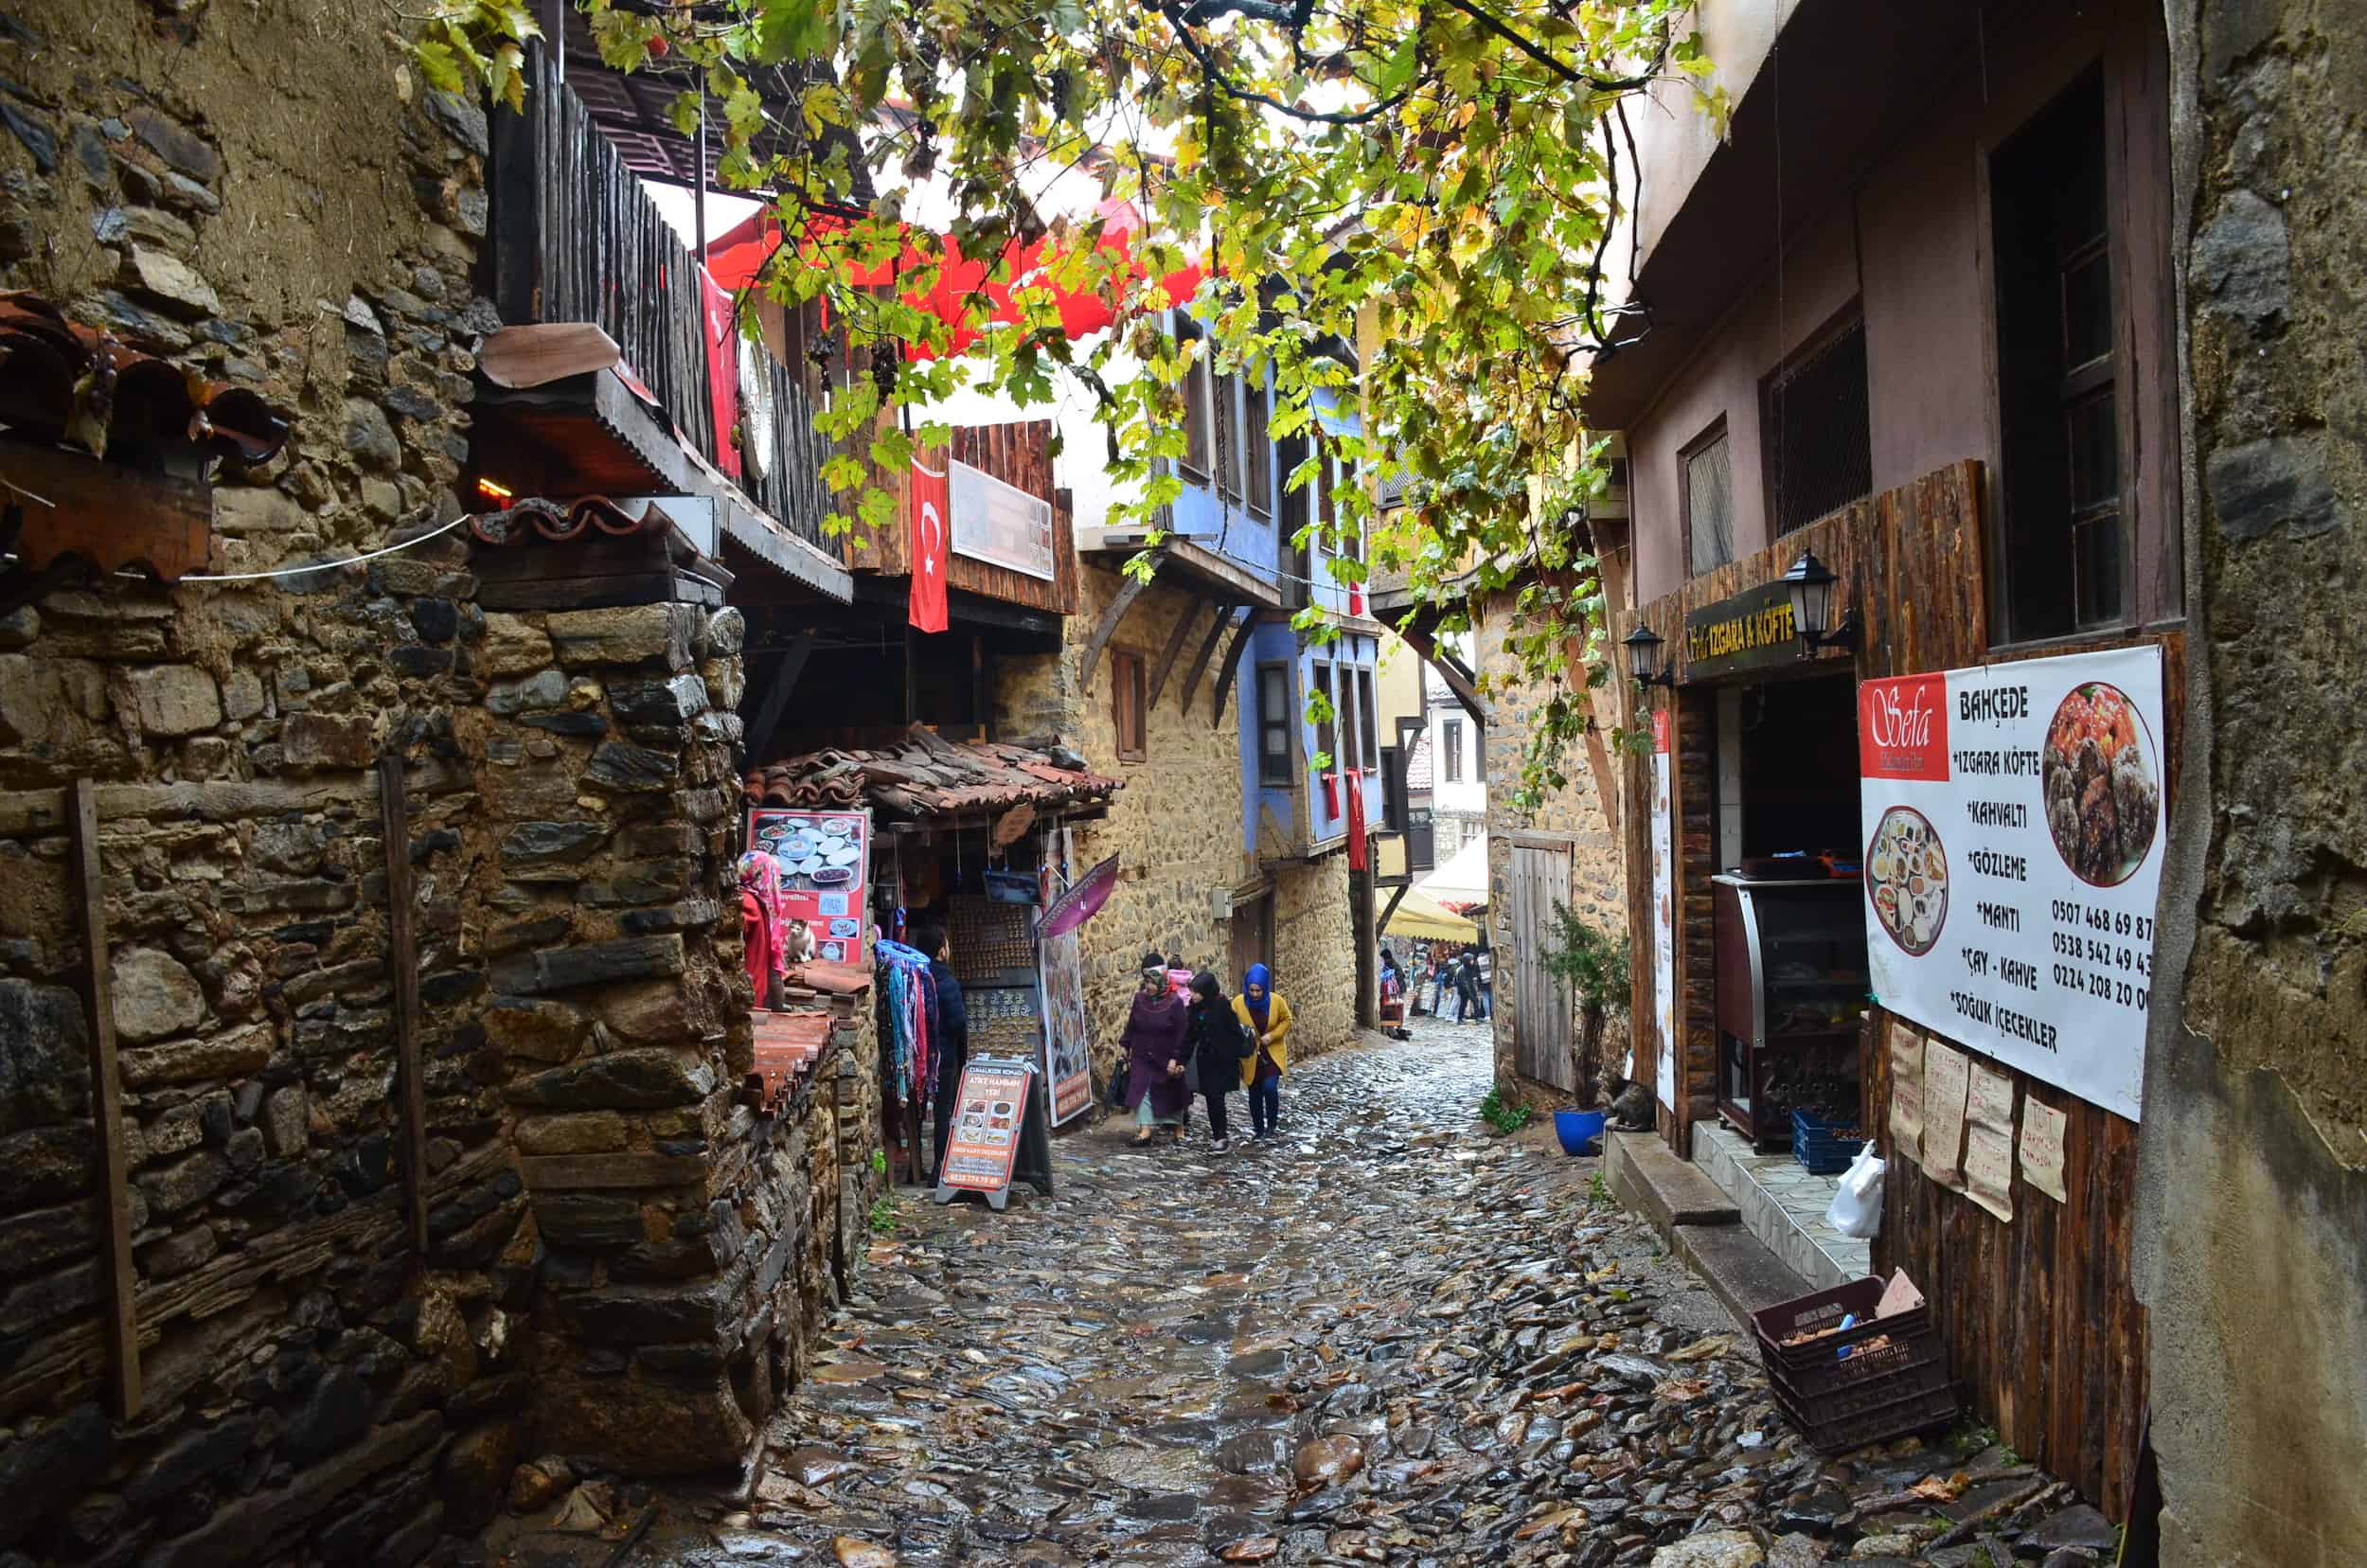 Cobblestone street in Cumalıkızık, Bursa, Turkey